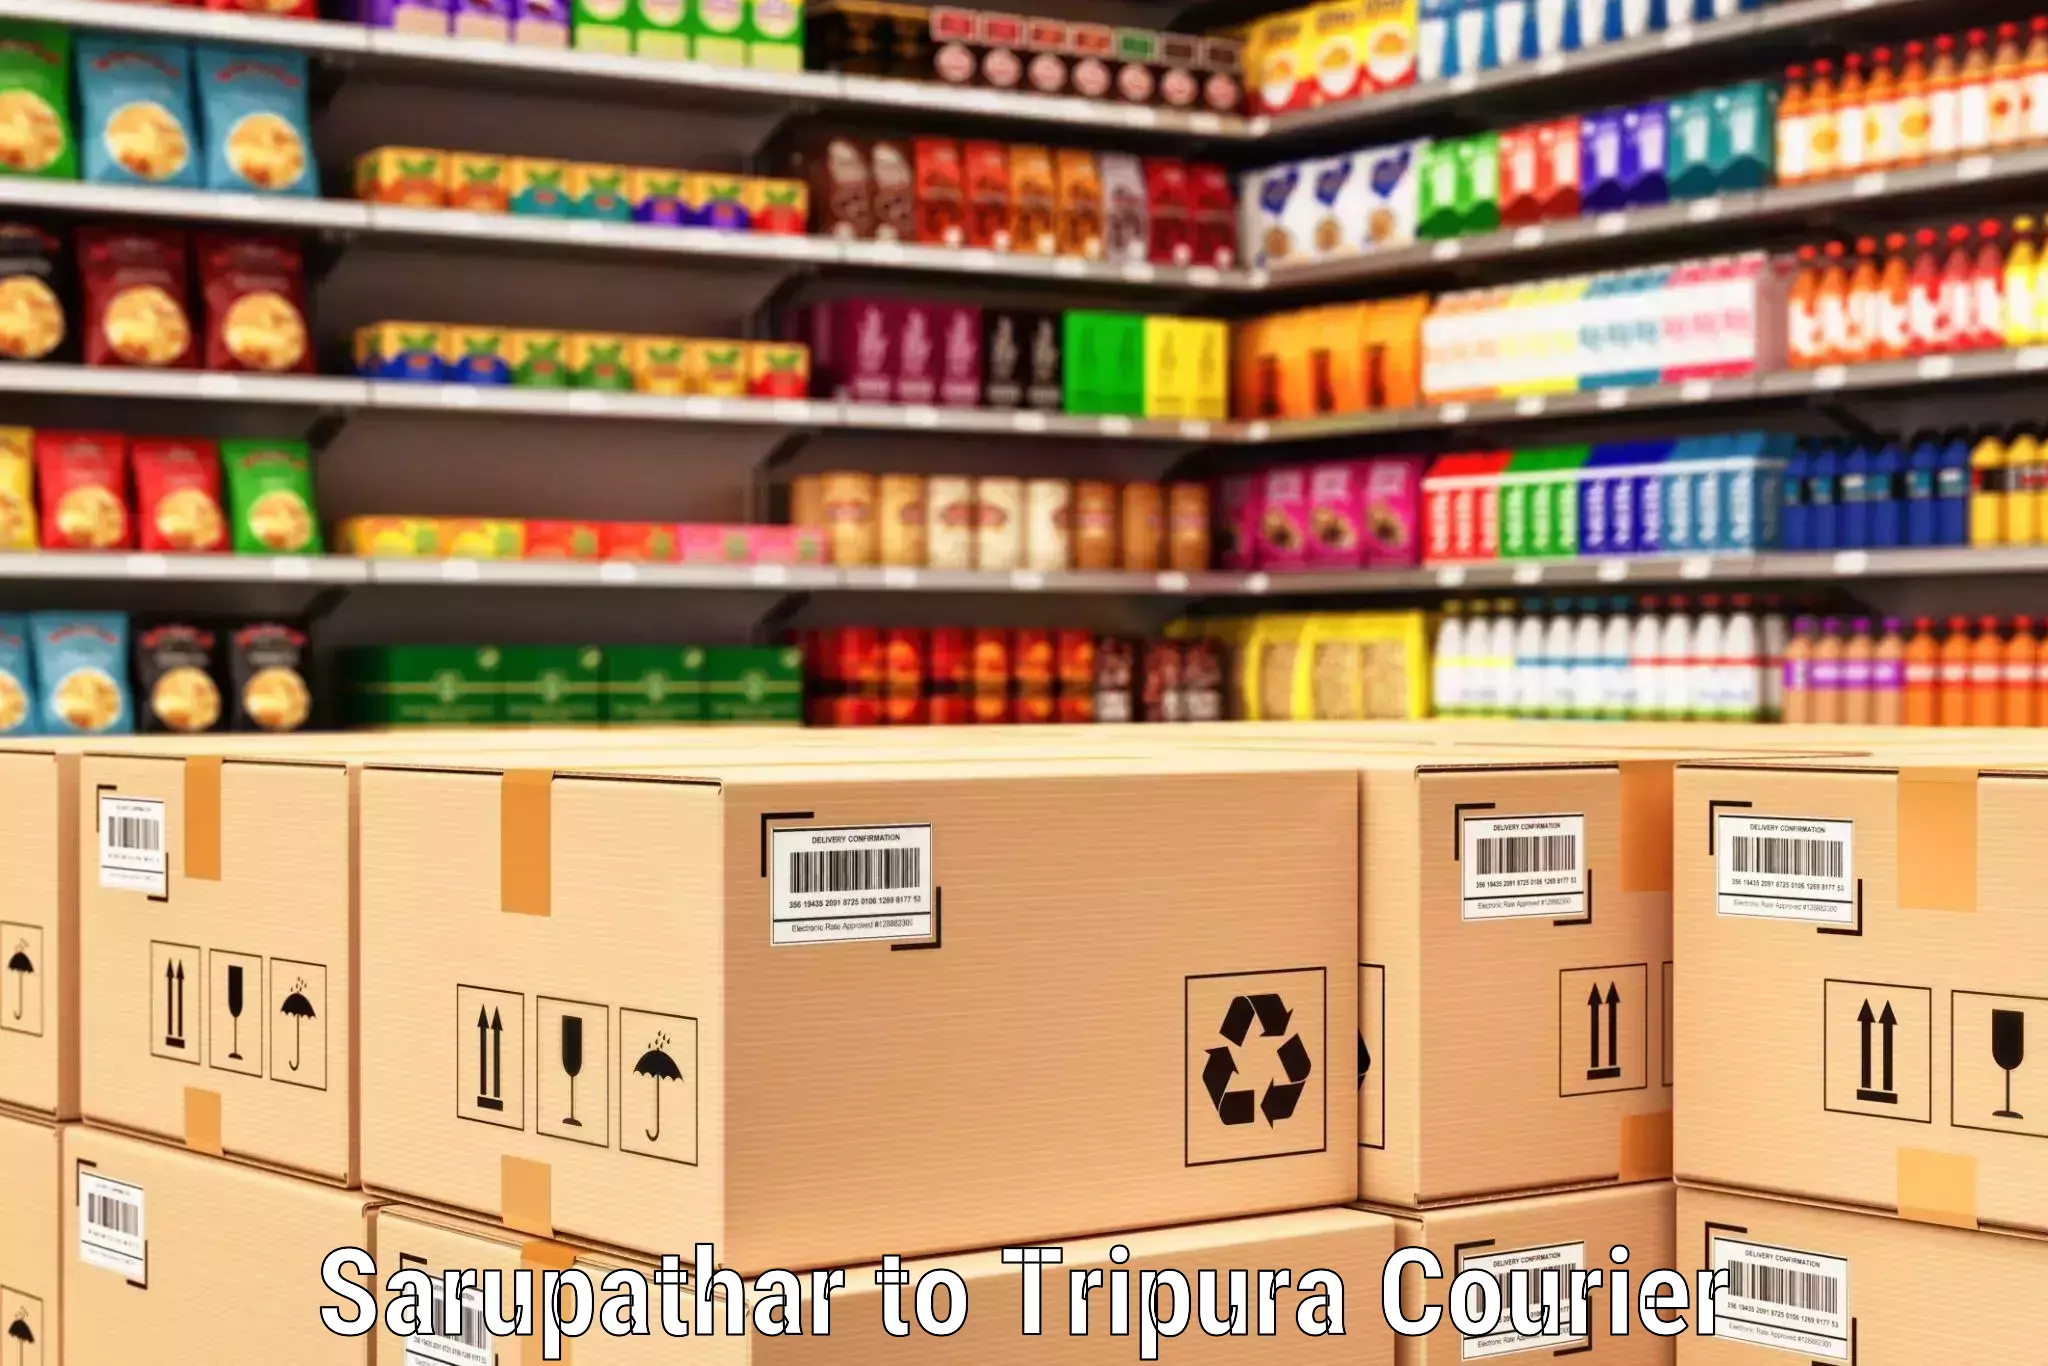 Customer-centric shipping Sarupathar to Agartala